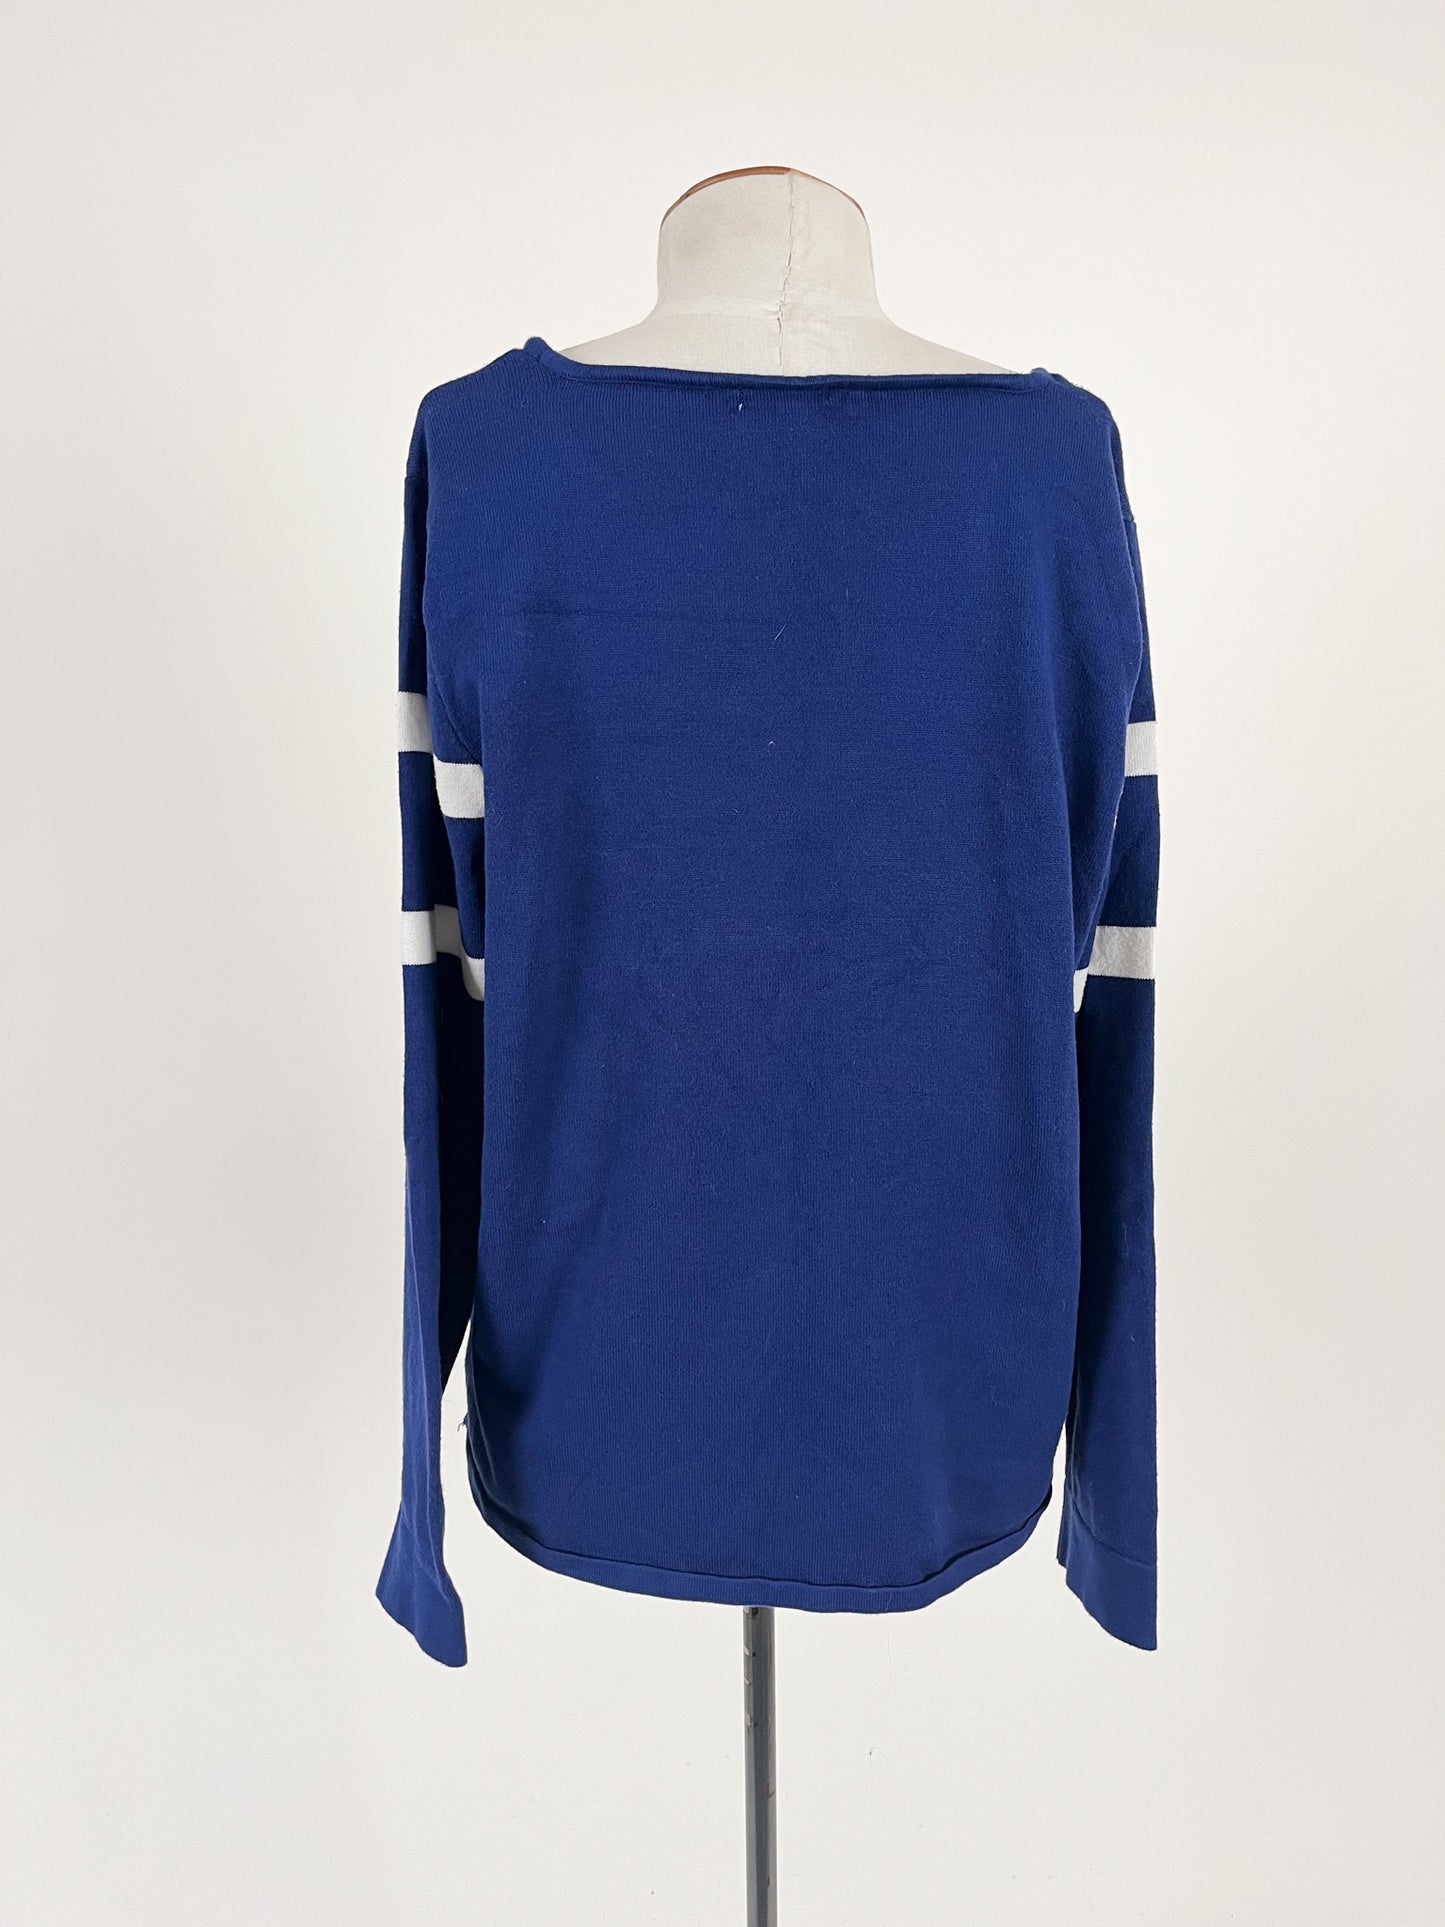 W. Lane | Blue Casual/Workwear Jumper | Size S